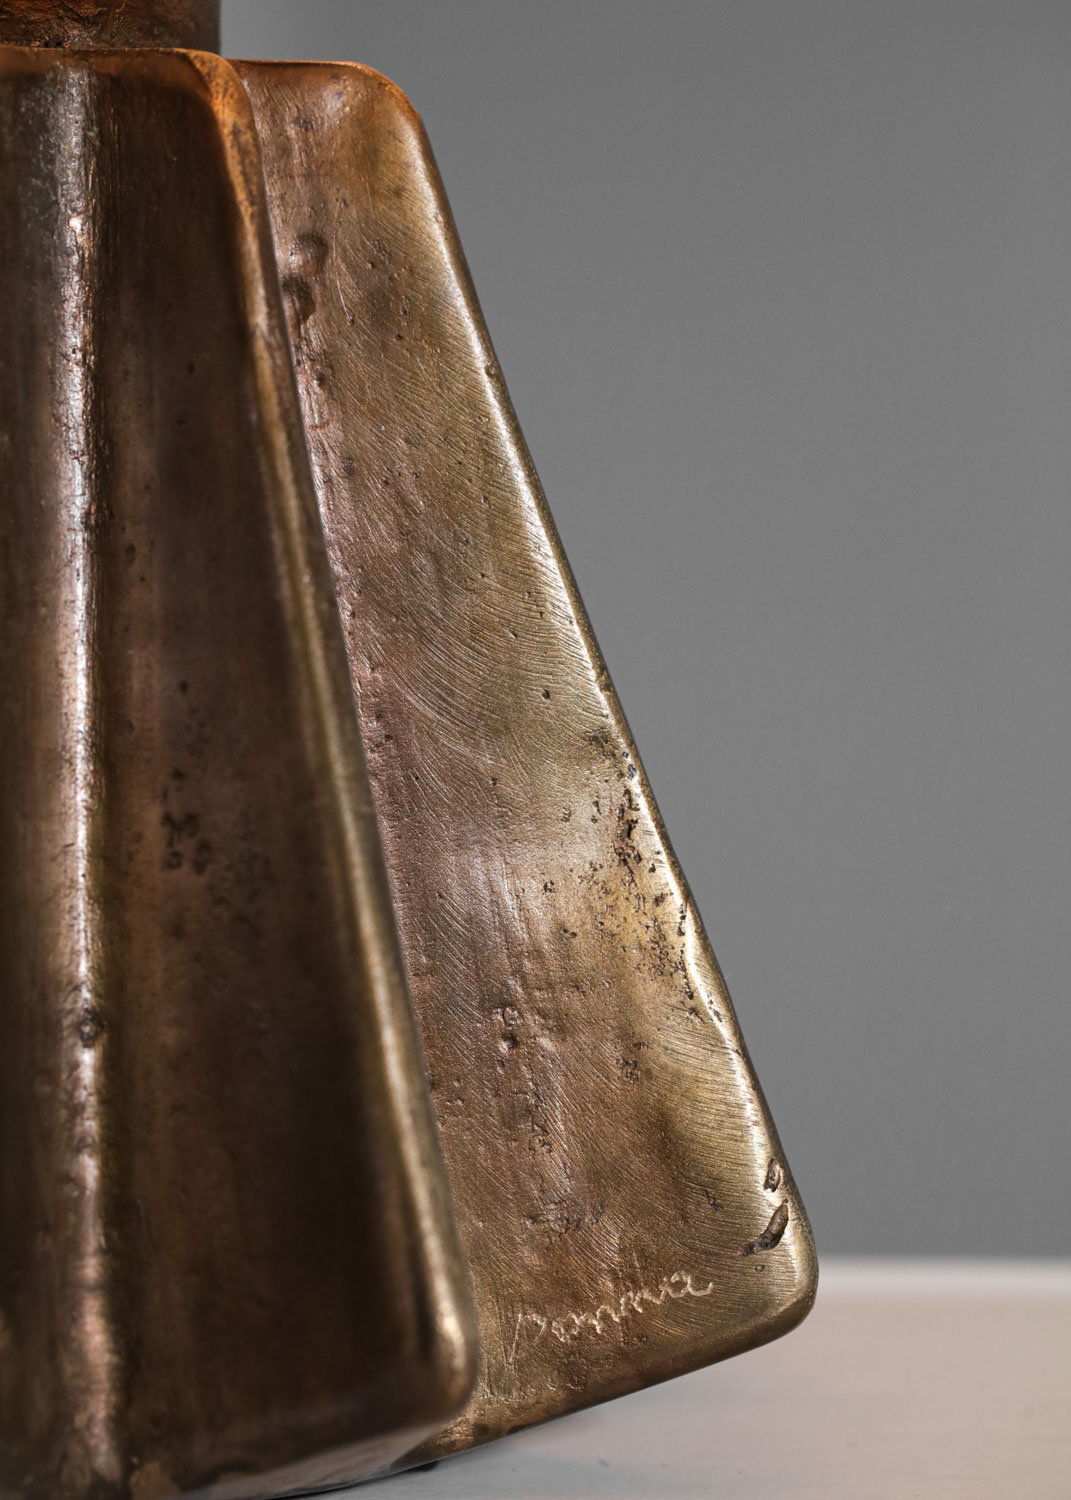 Lampe à poser par donna pour Danke Galerie bronze massif patiné